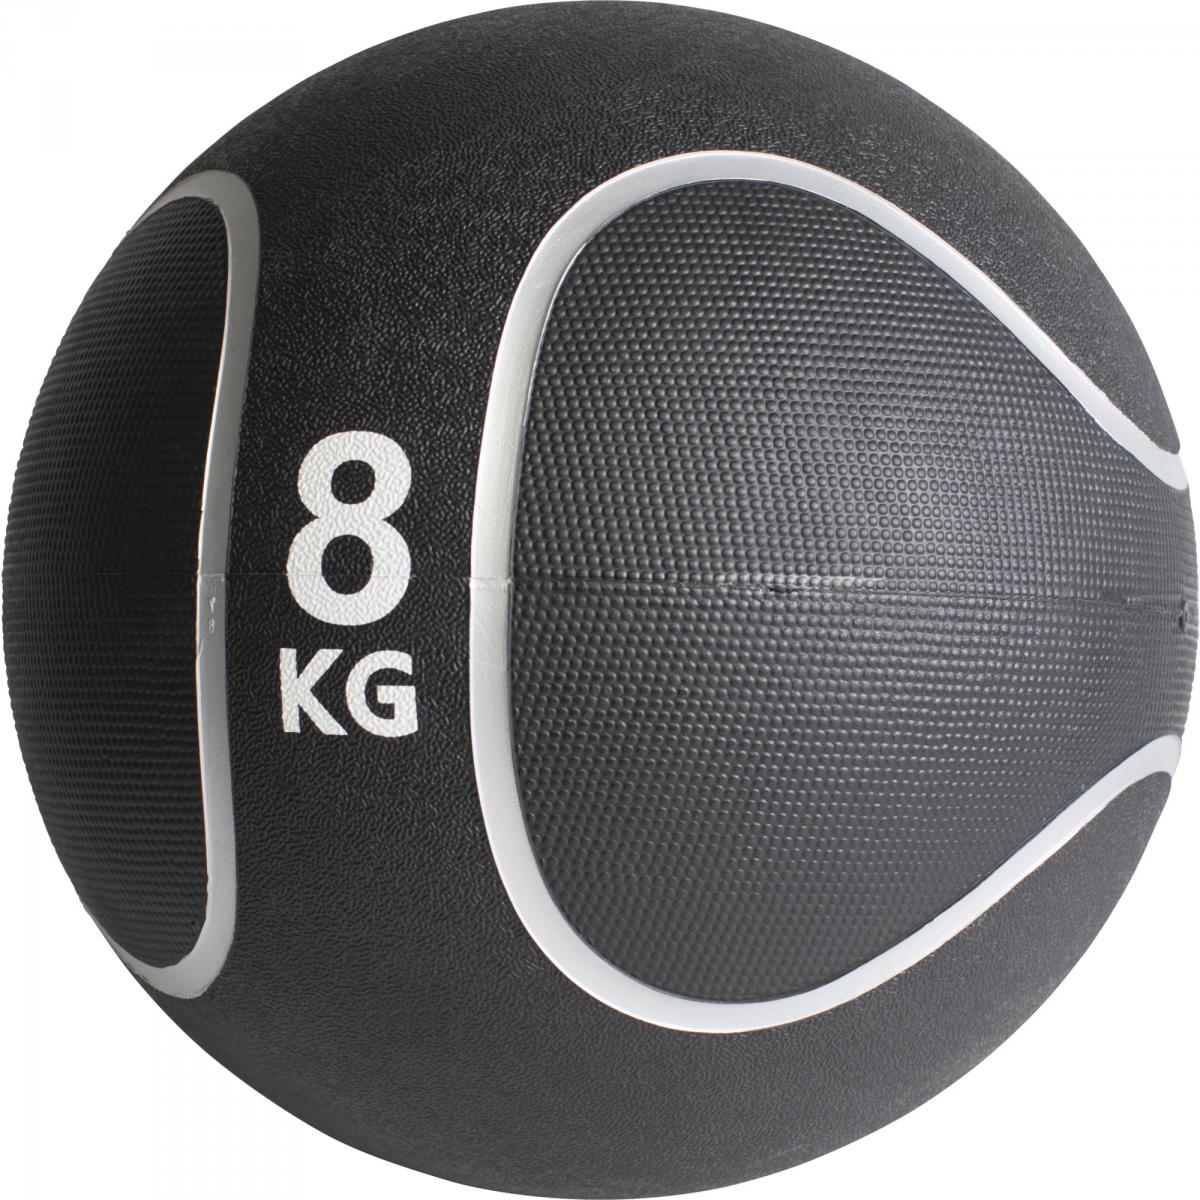 Médecine ball style noir/gris de 8 KG diamètre 28,6cm